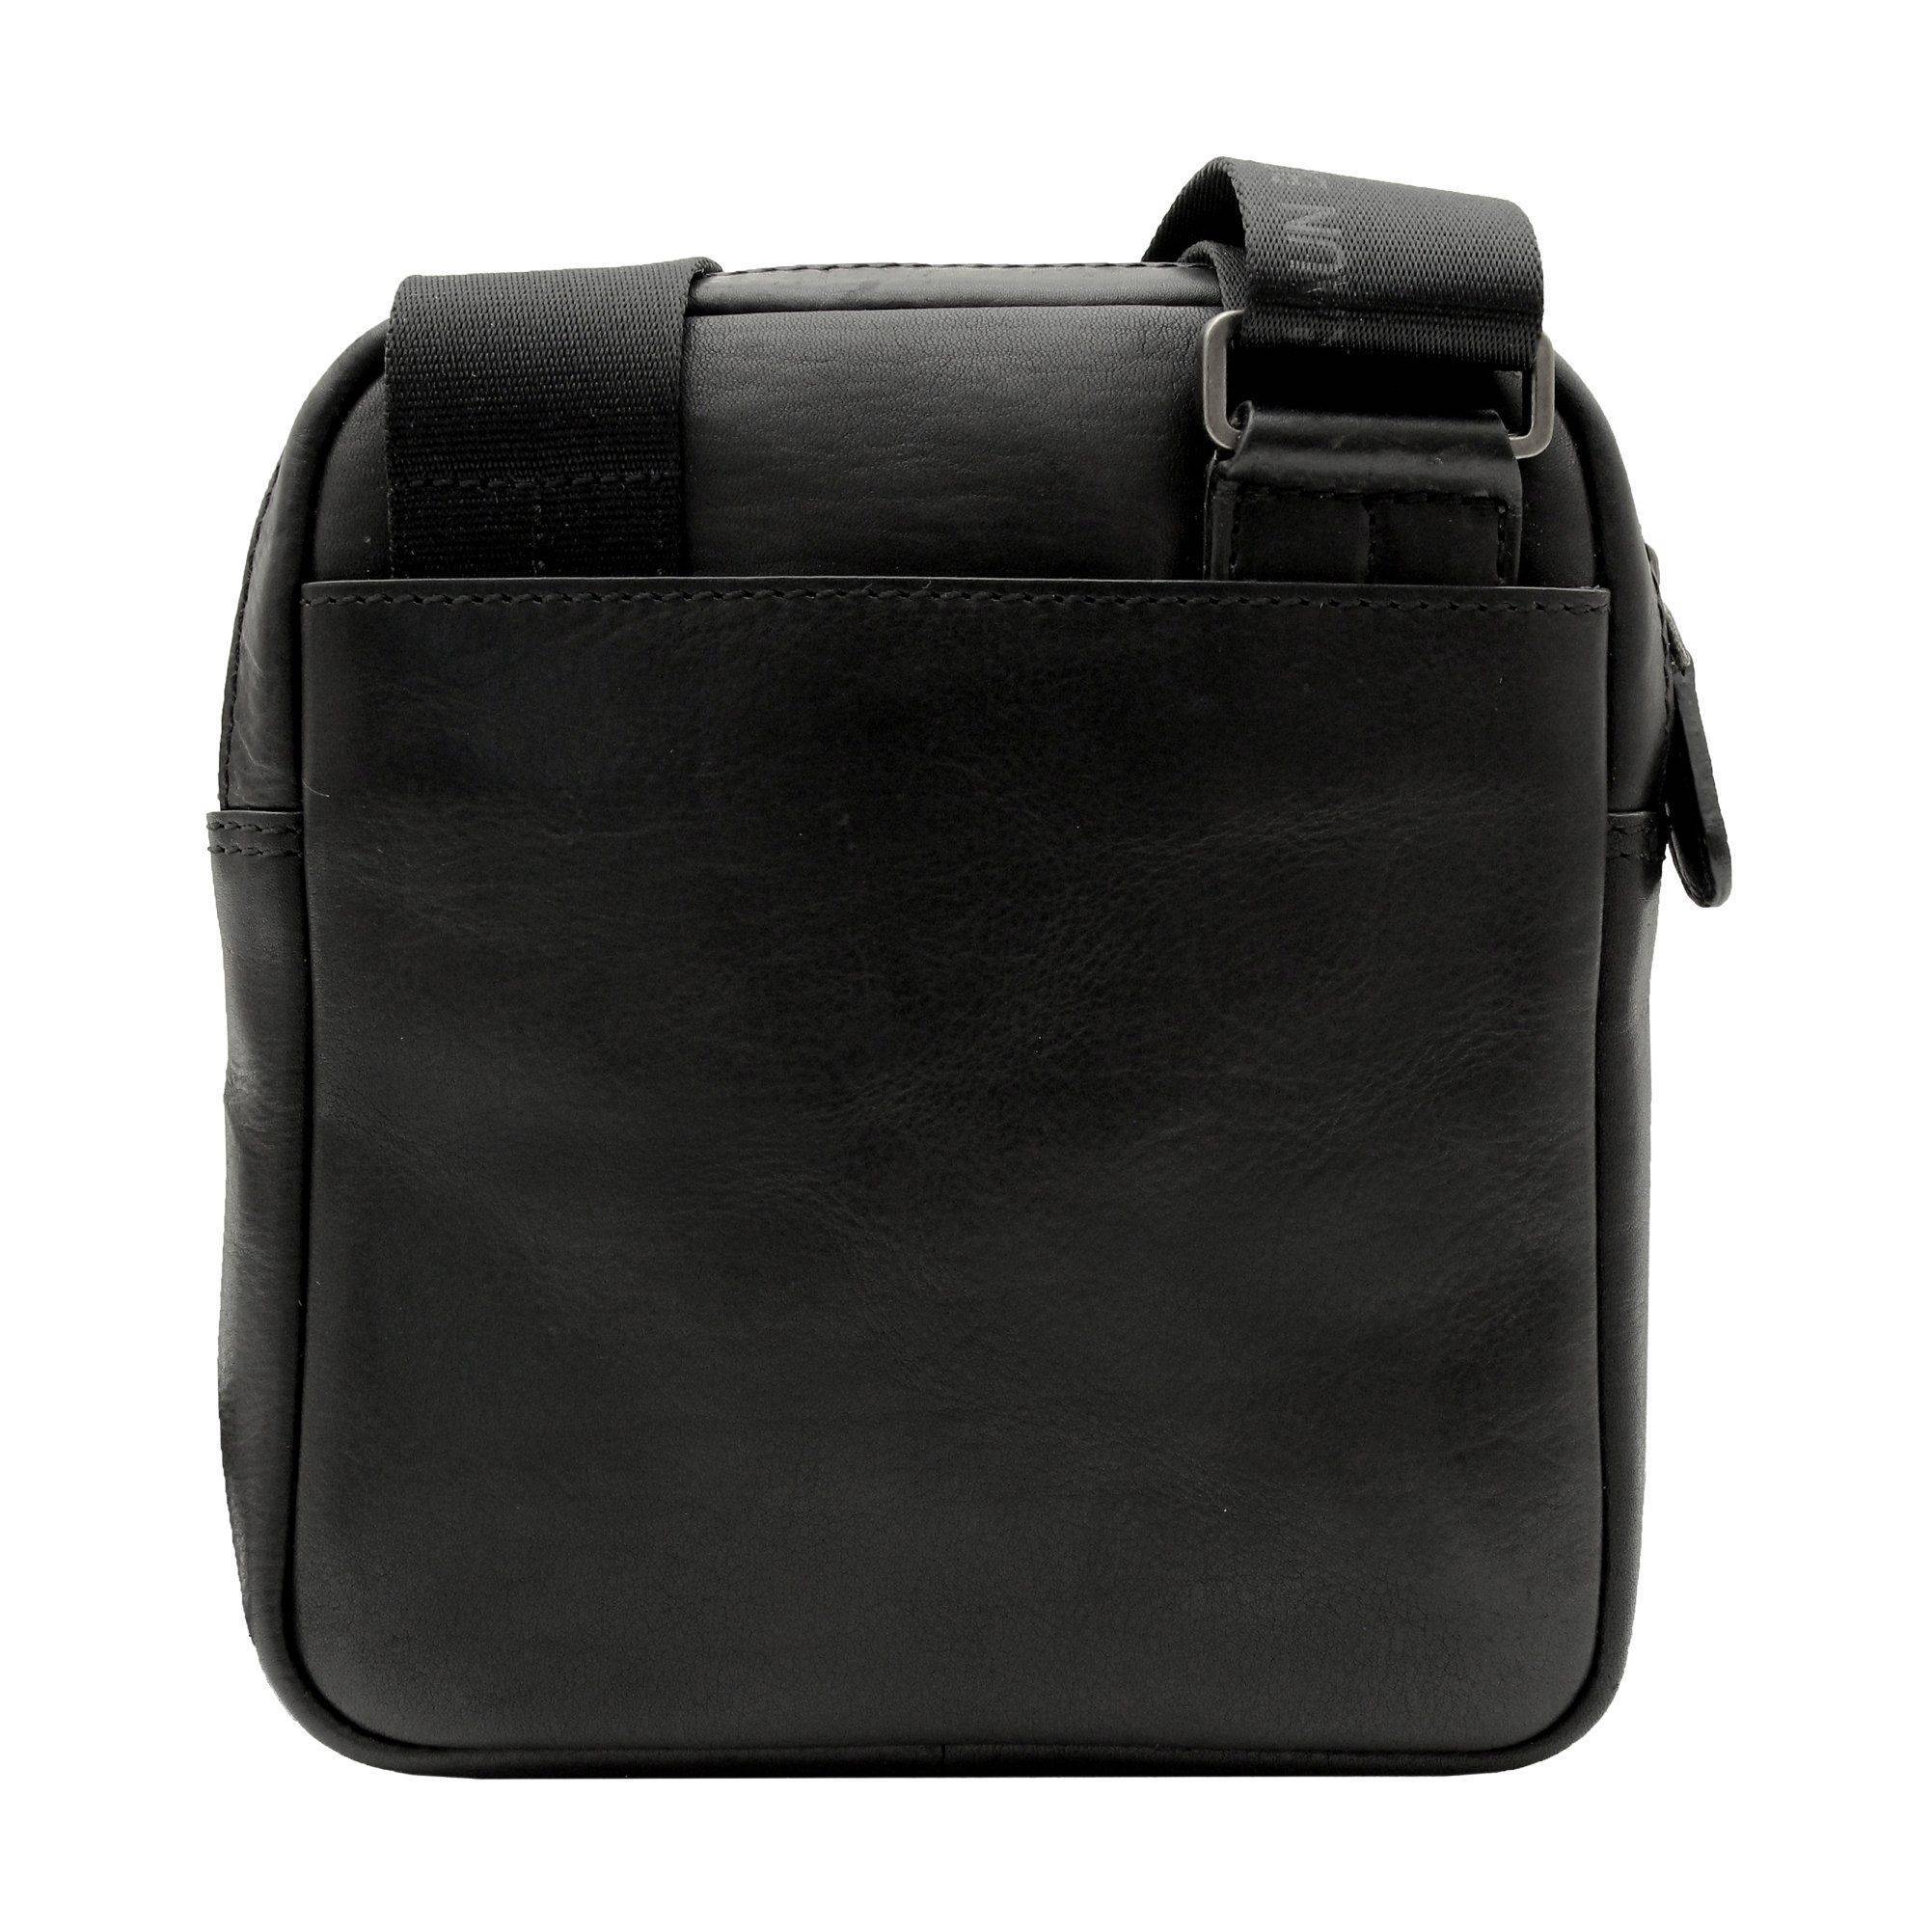 Сумка репортер Braun Buffel PARMA Shoulder Bag XS 75361, цвет черный, размер ONE SIZE - фото 2